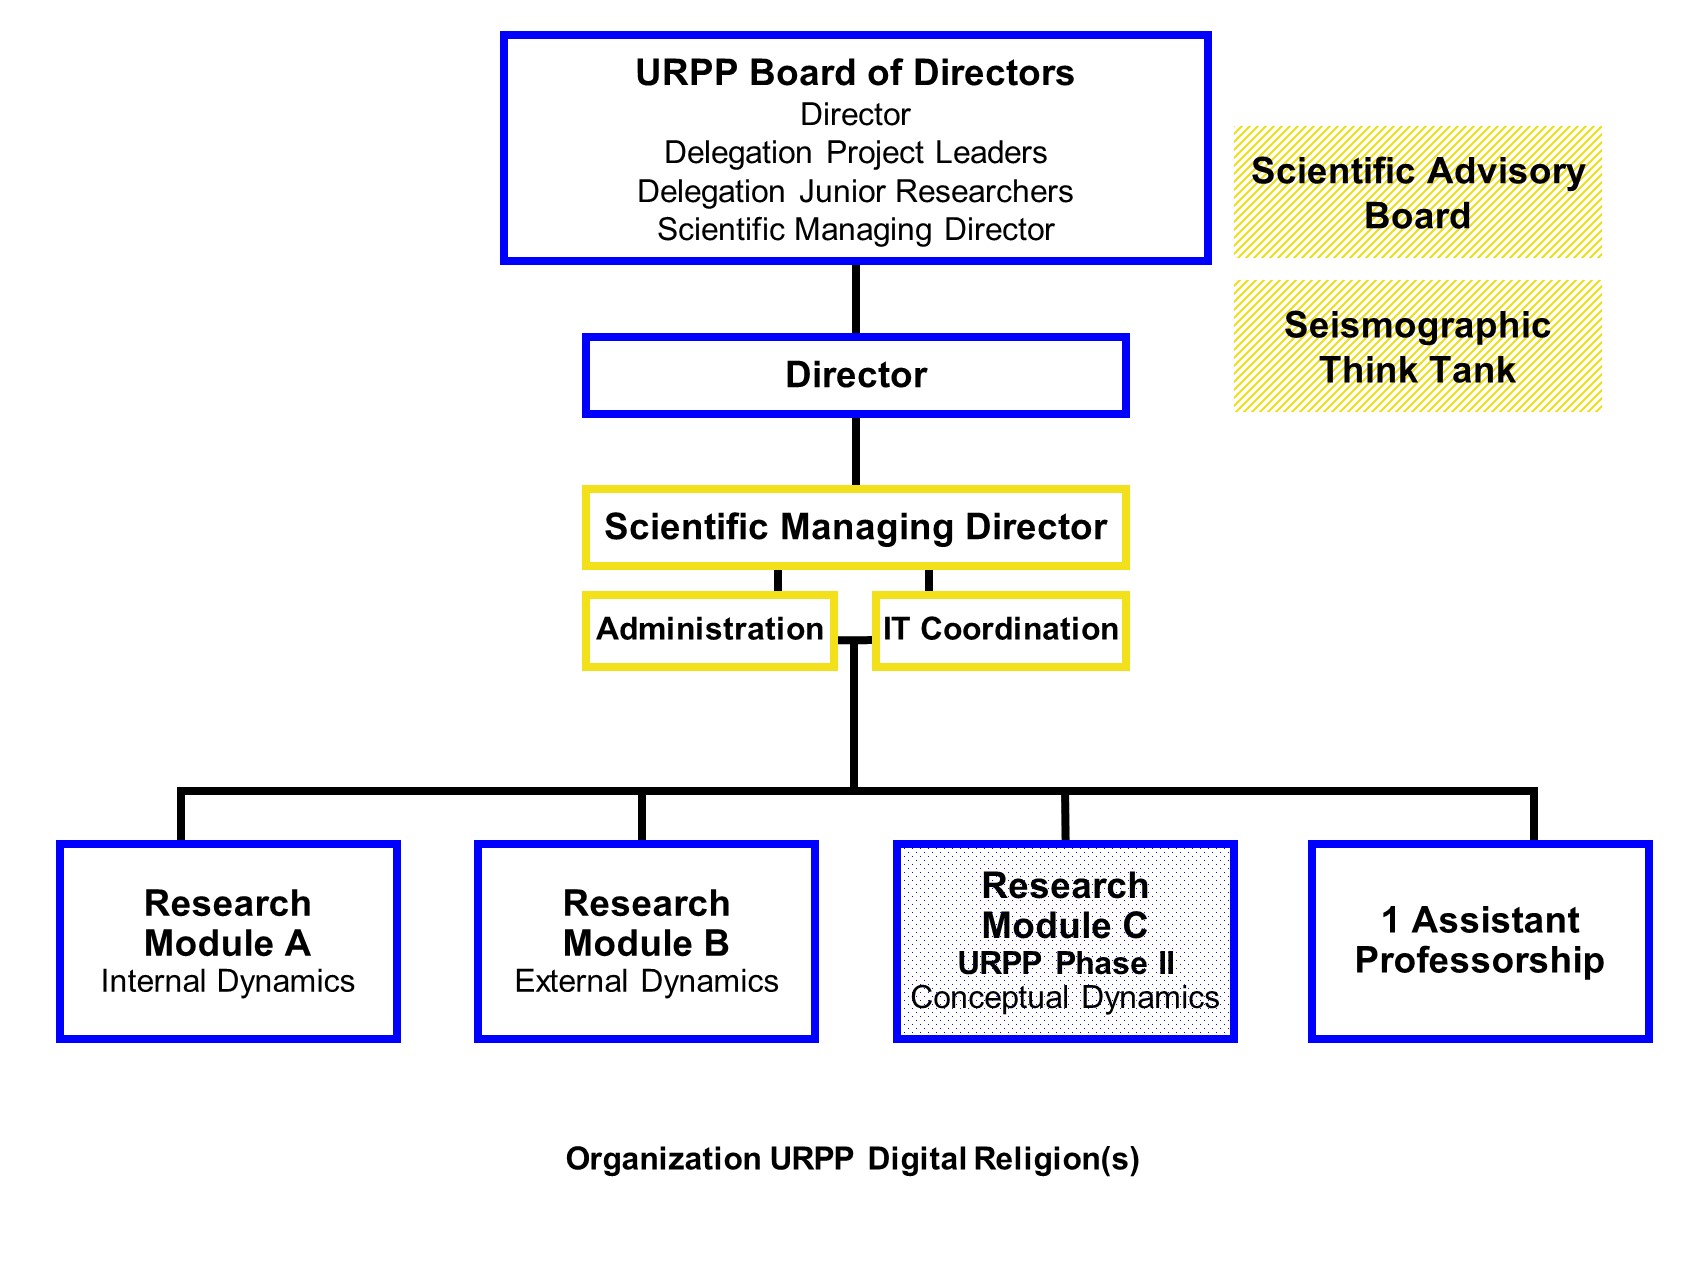 Organization URPP Digital Religion(s)